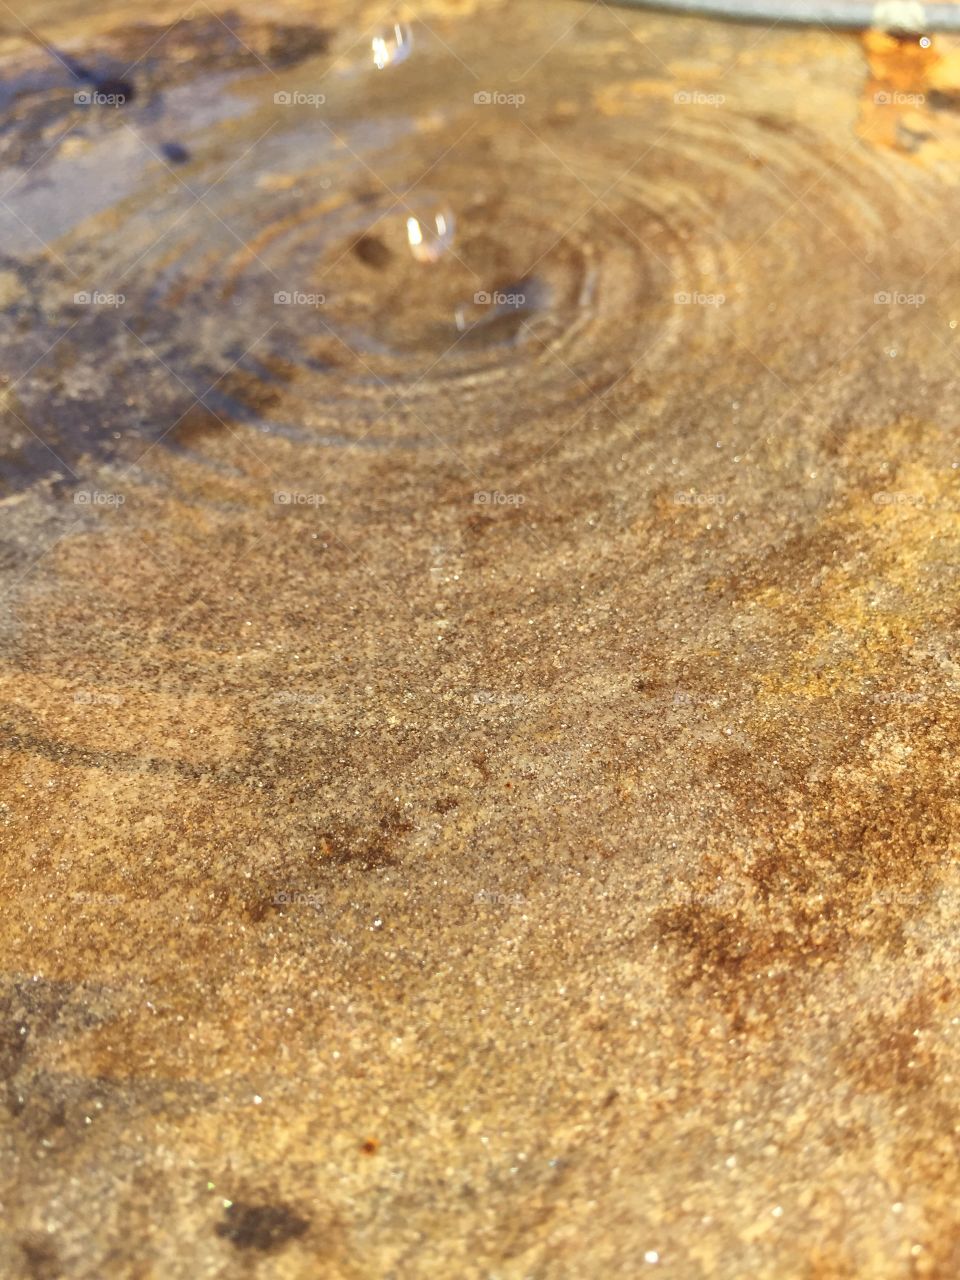 Water swirl in rocks